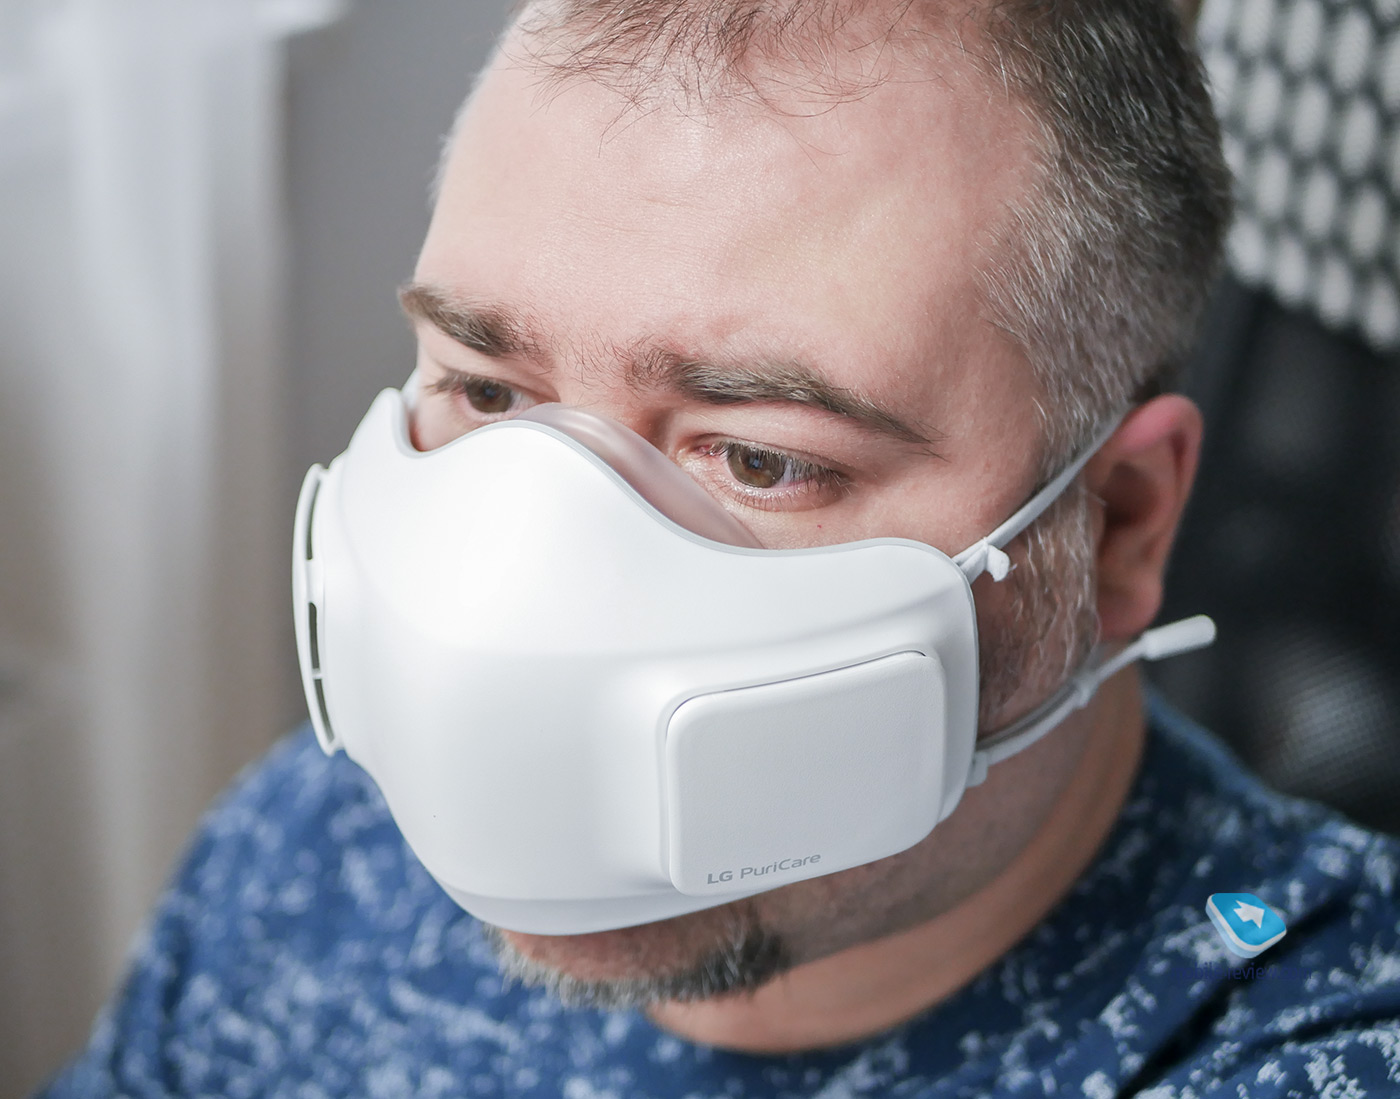 Огляд маски LG PuriCare Wearable Air Purifier – дорога іграшка чи важливий сучасний пристрій?